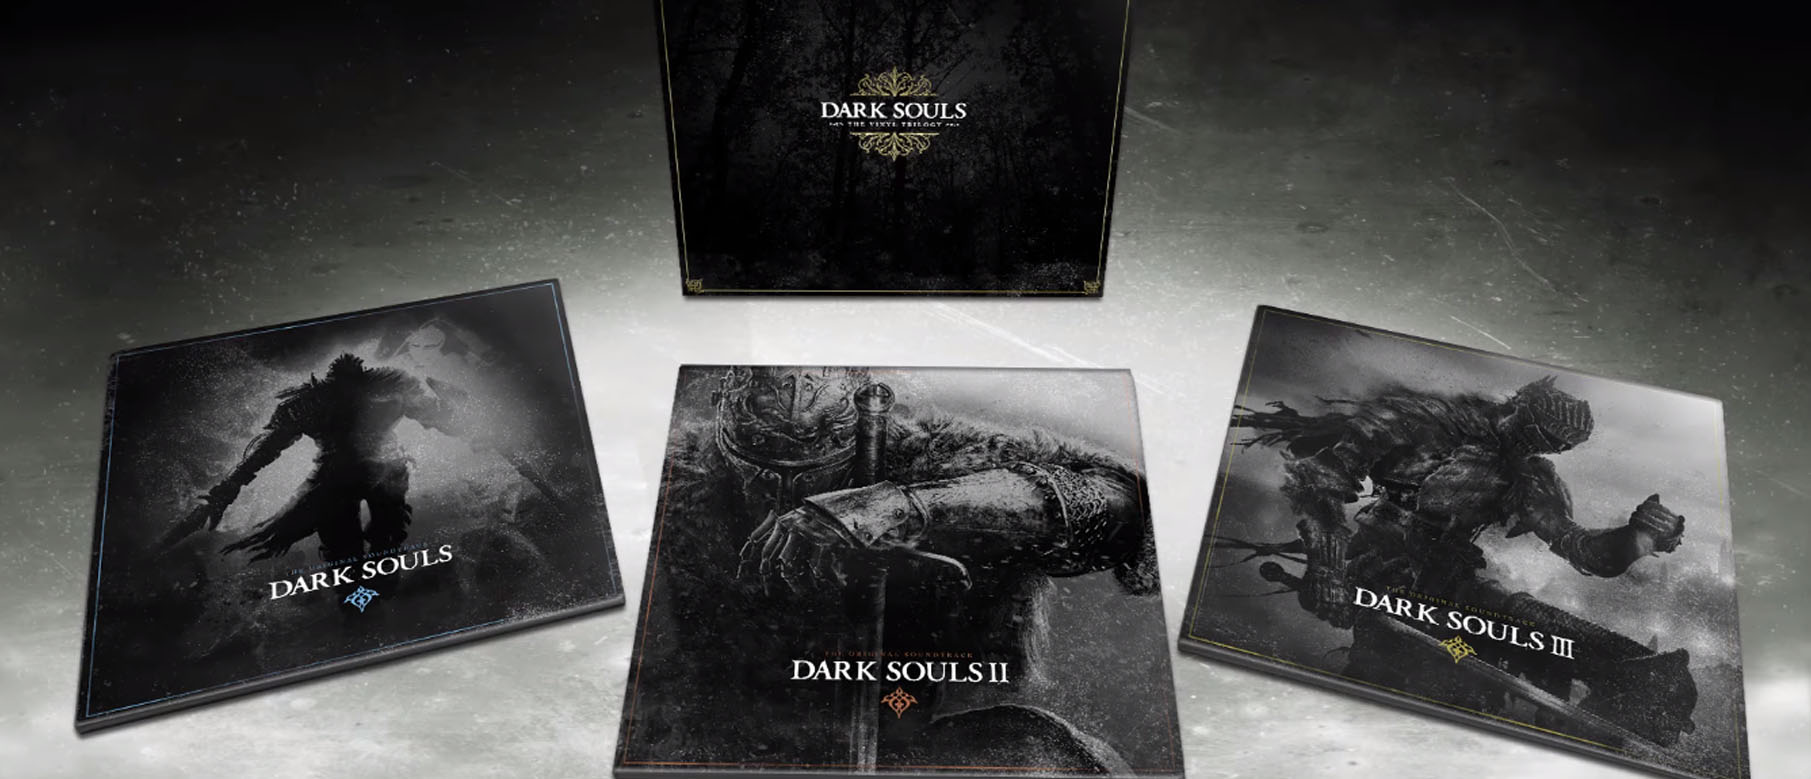 Изображение к Оркестровые композиции из игр серии Dark Souls выйдут на виниловых пластинках